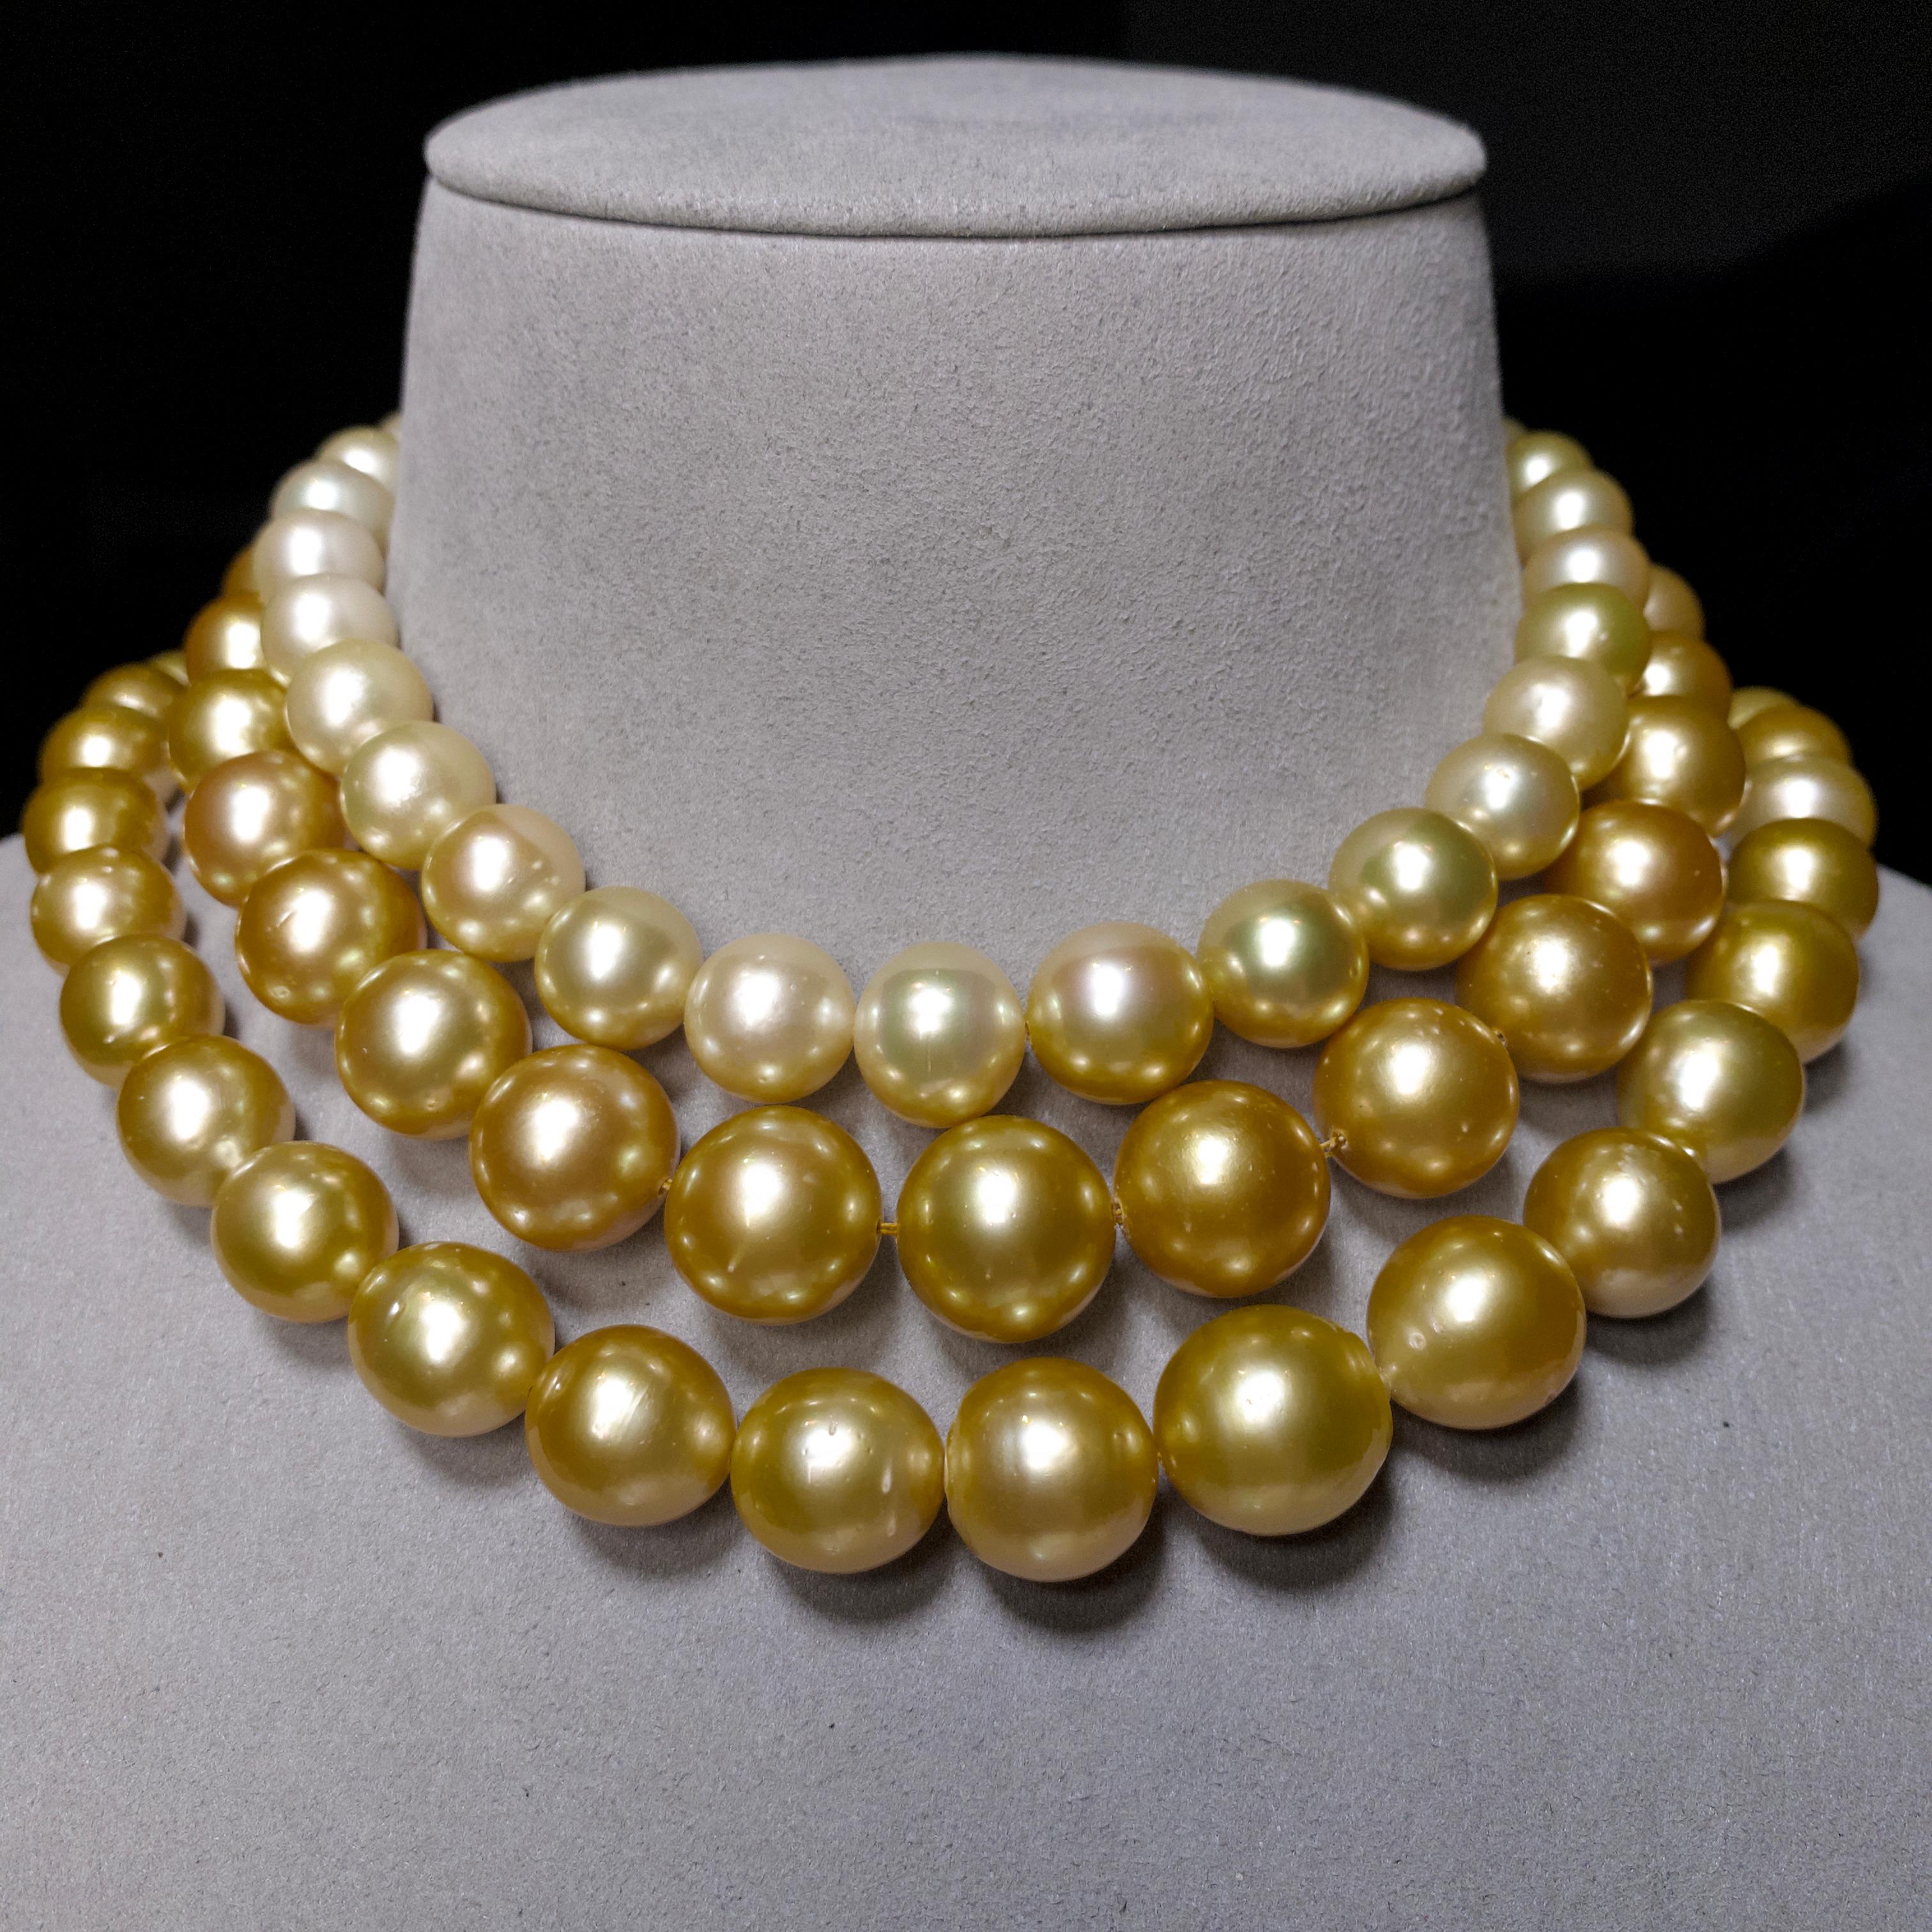 eostre necklace